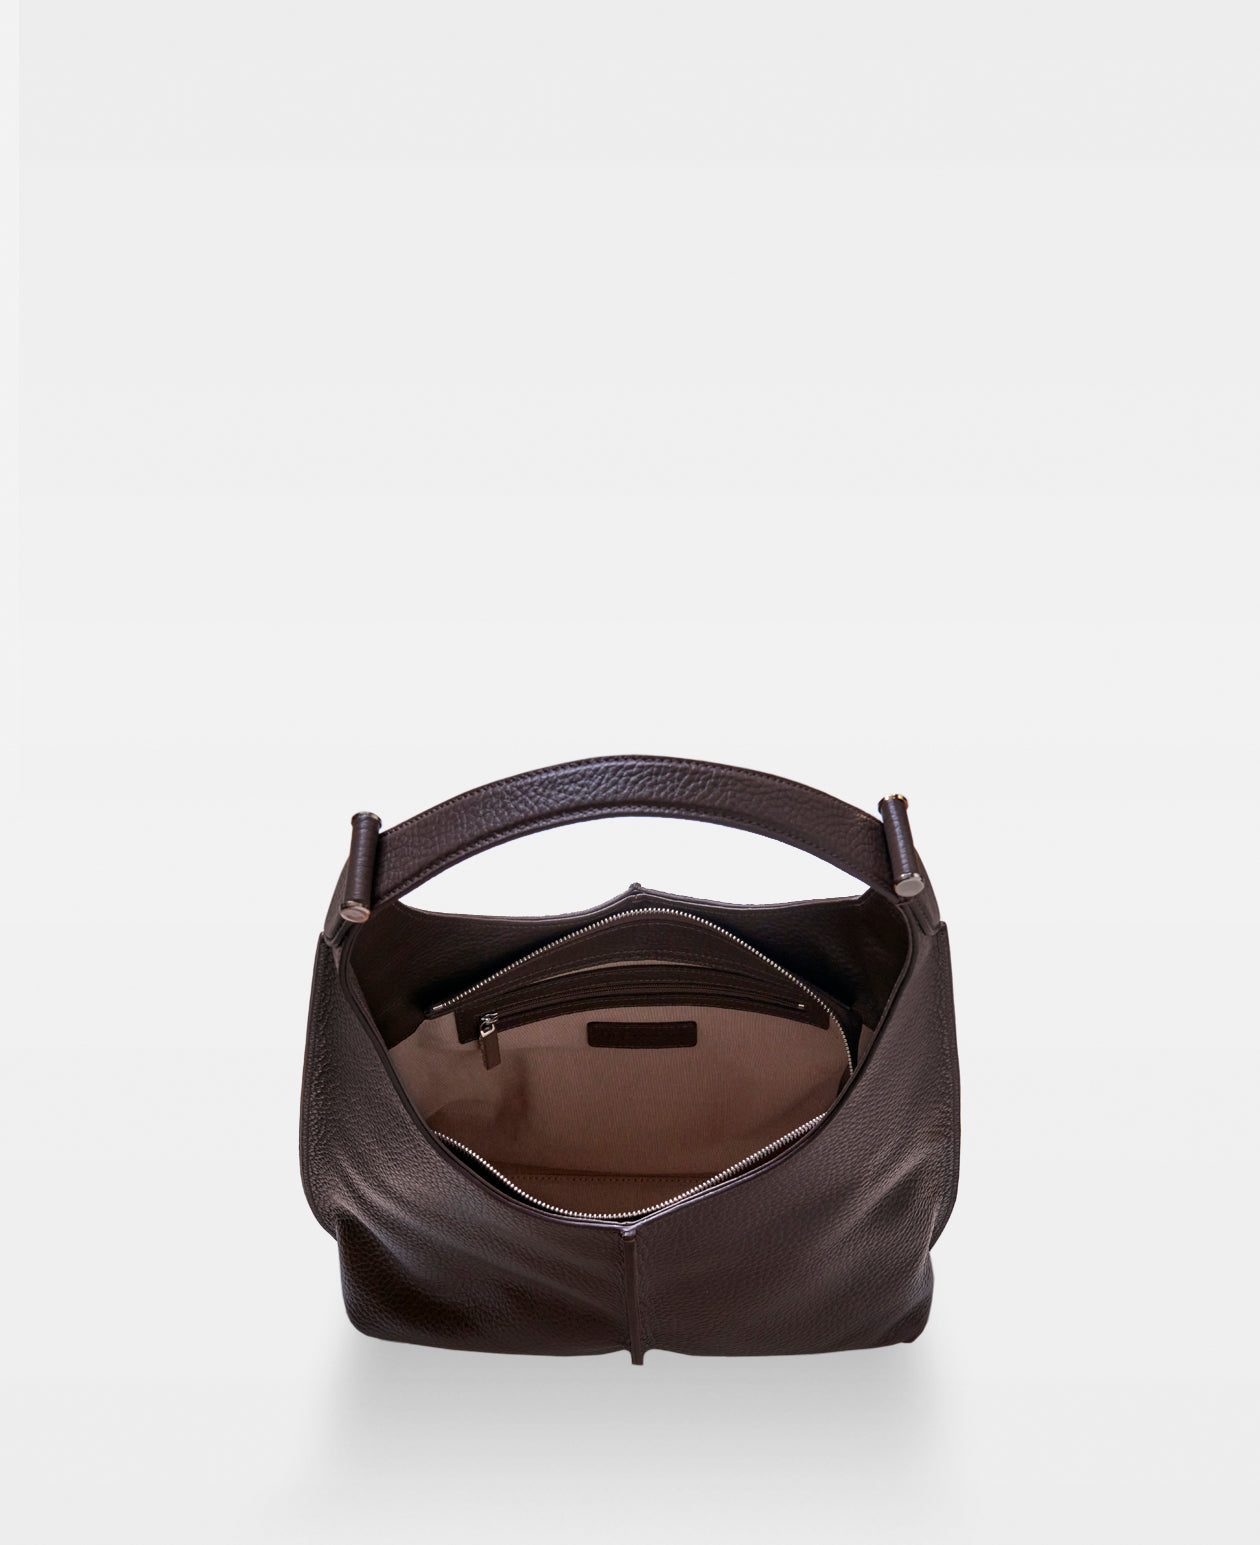 CAROL small shoulder bag - Mocha